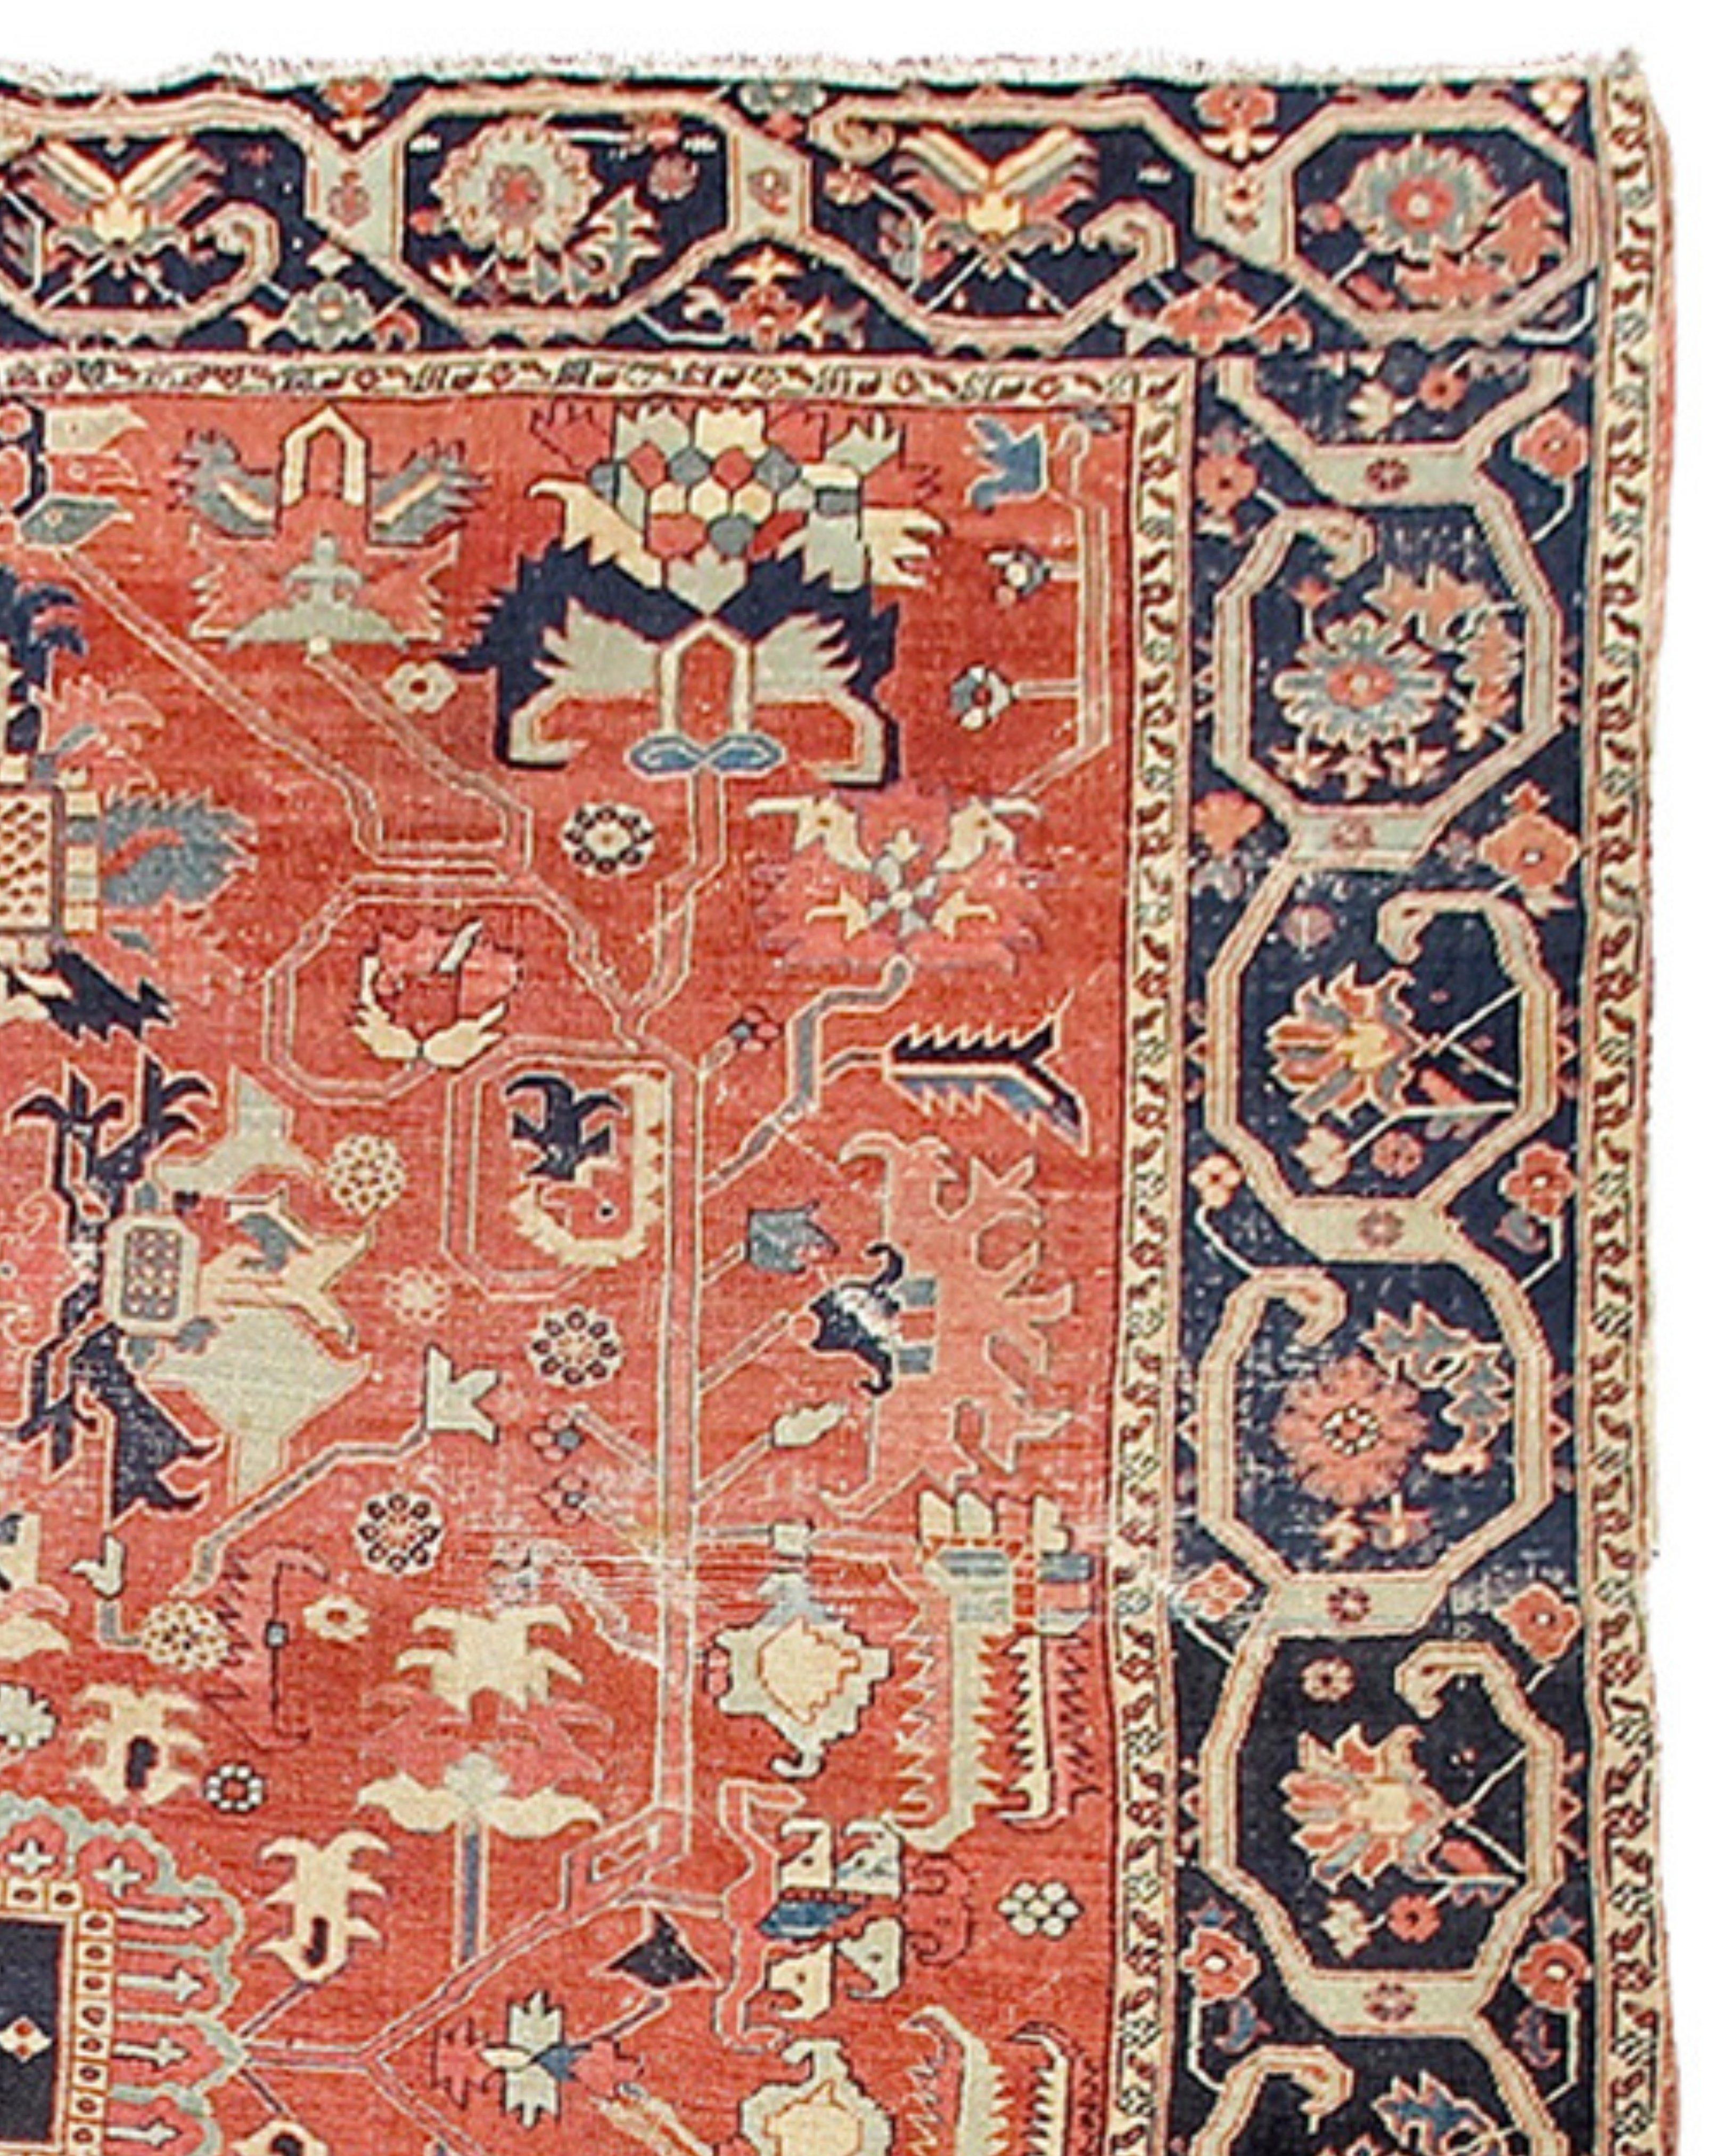 Antiker persischer Serapi-Teppich, spätes 19. Jahrhundert

Zusätzliche Informationen:
Abmessungen: 8'10